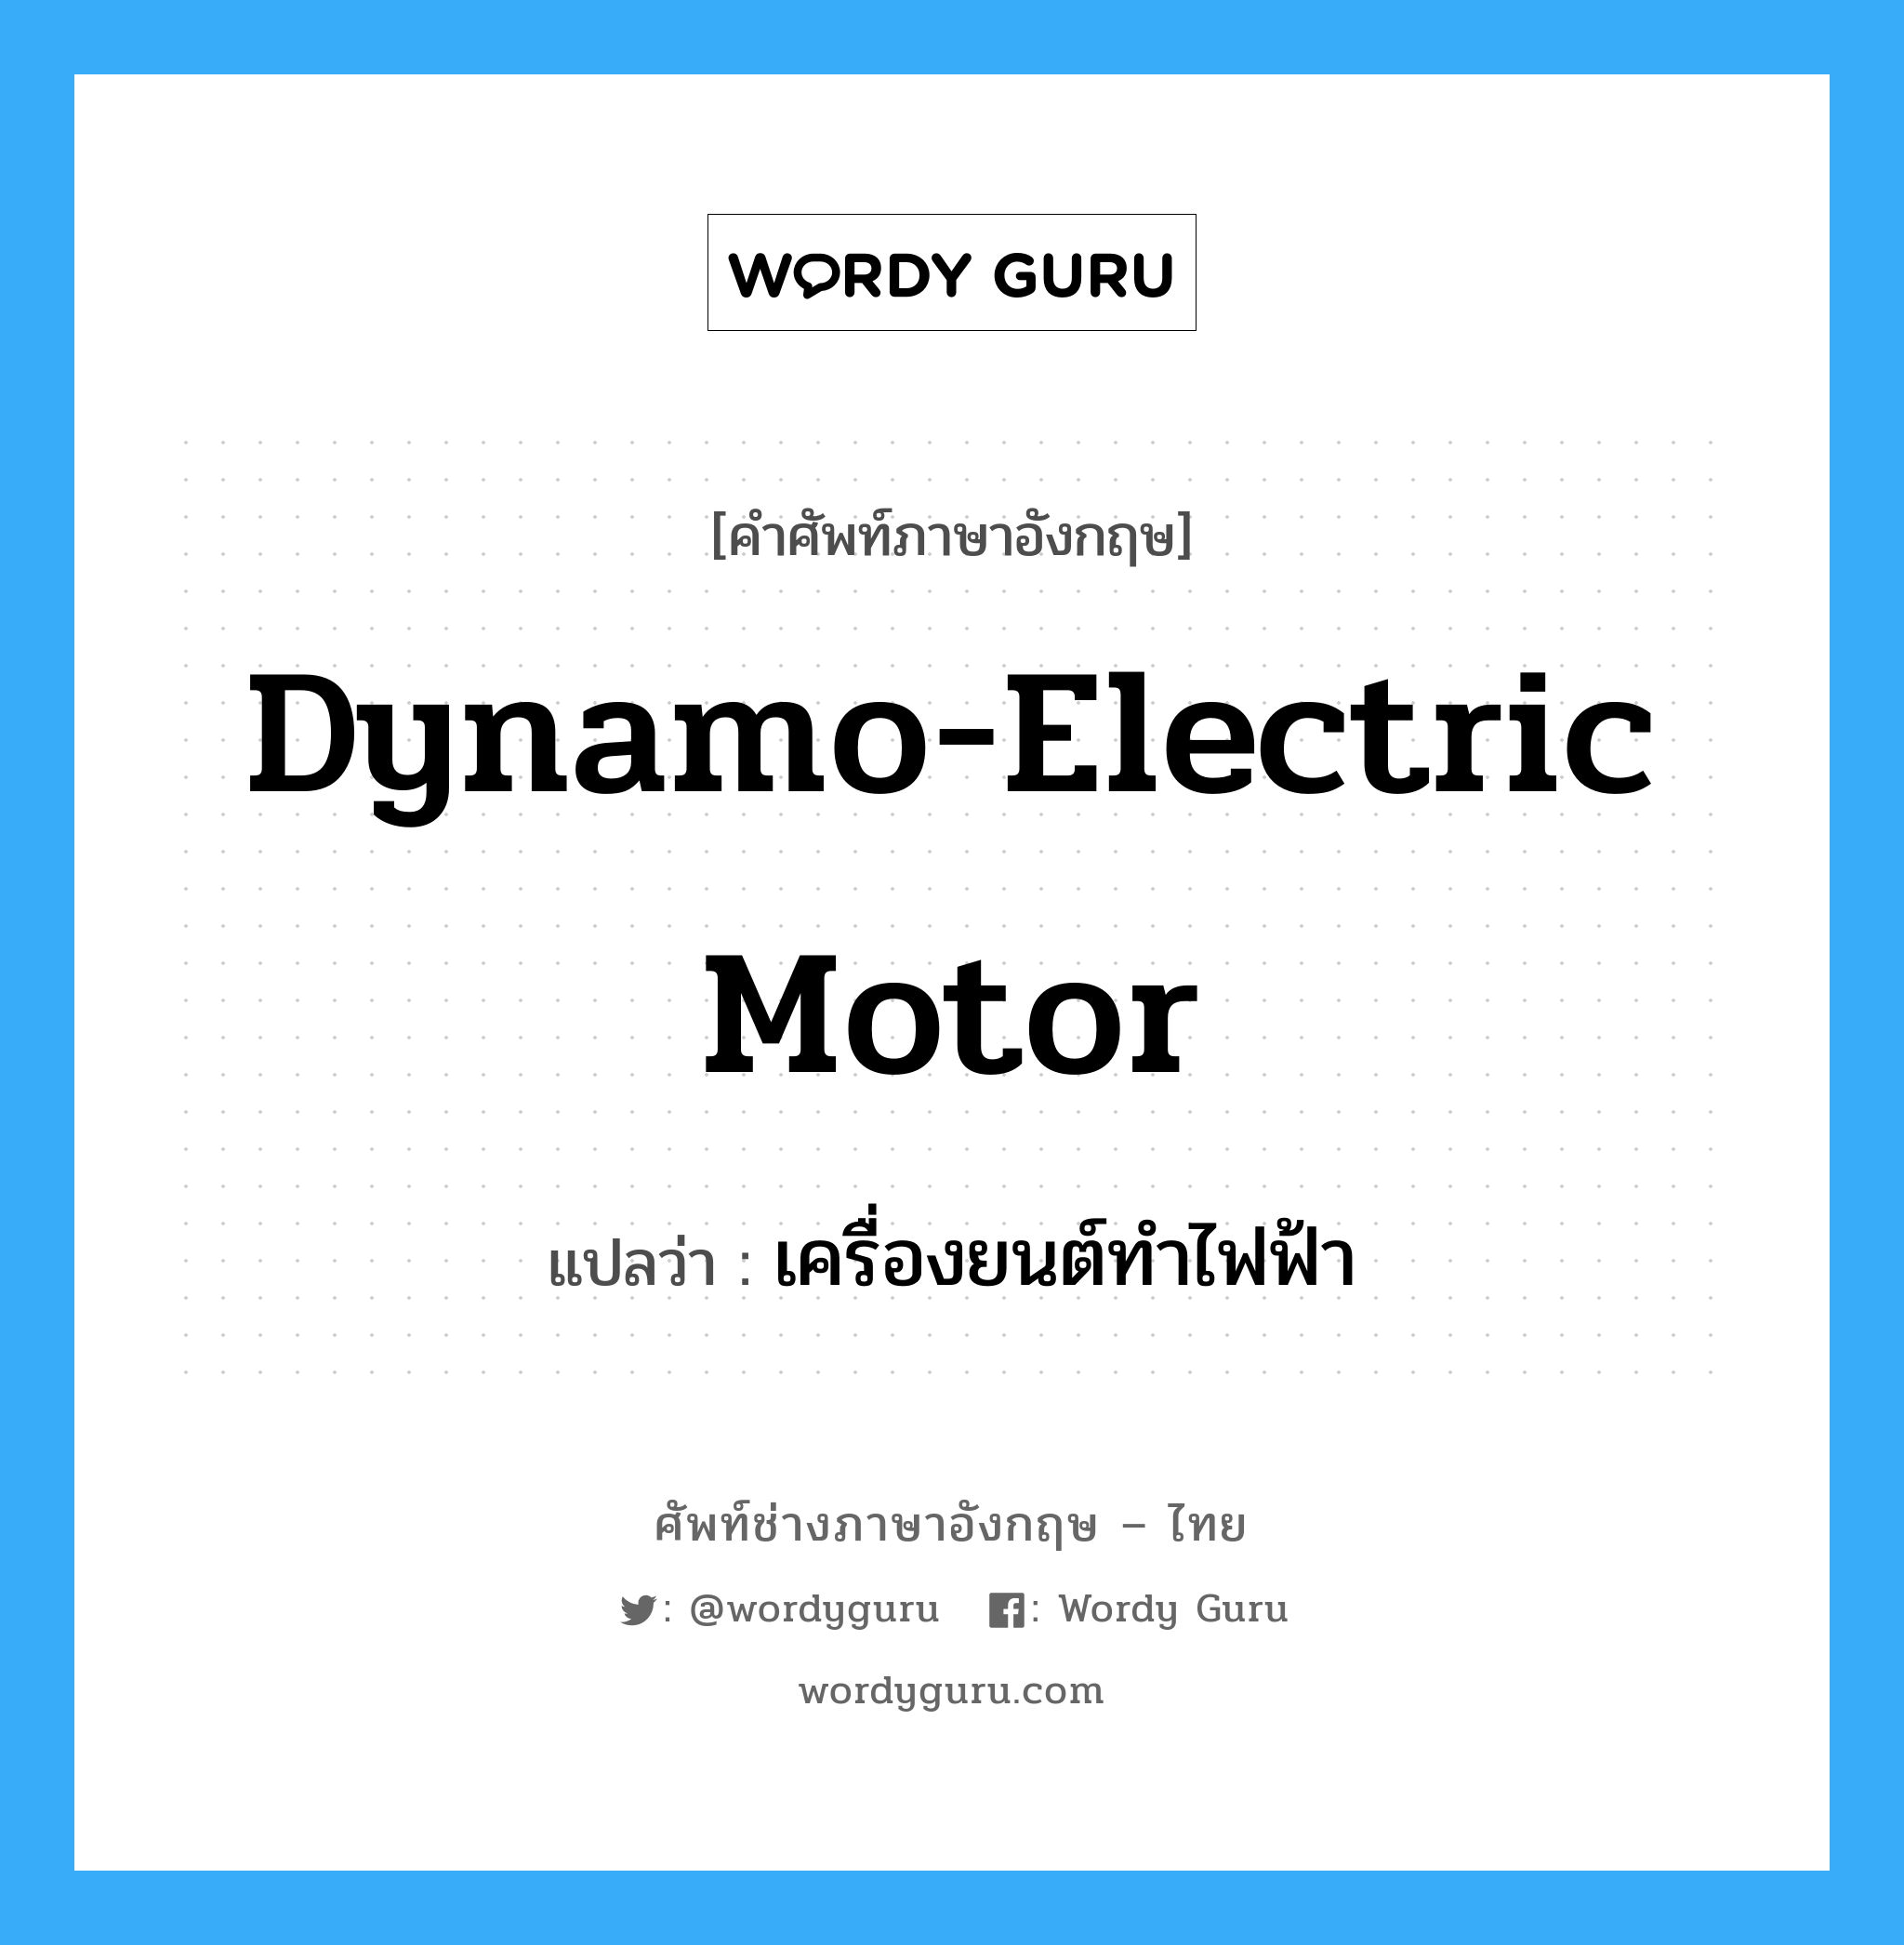 dynamo electric motor แปลว่า?, คำศัพท์ช่างภาษาอังกฤษ - ไทย dynamo-electric motor คำศัพท์ภาษาอังกฤษ dynamo-electric motor แปลว่า เครื่องยนต์ทำไฟฟ้า